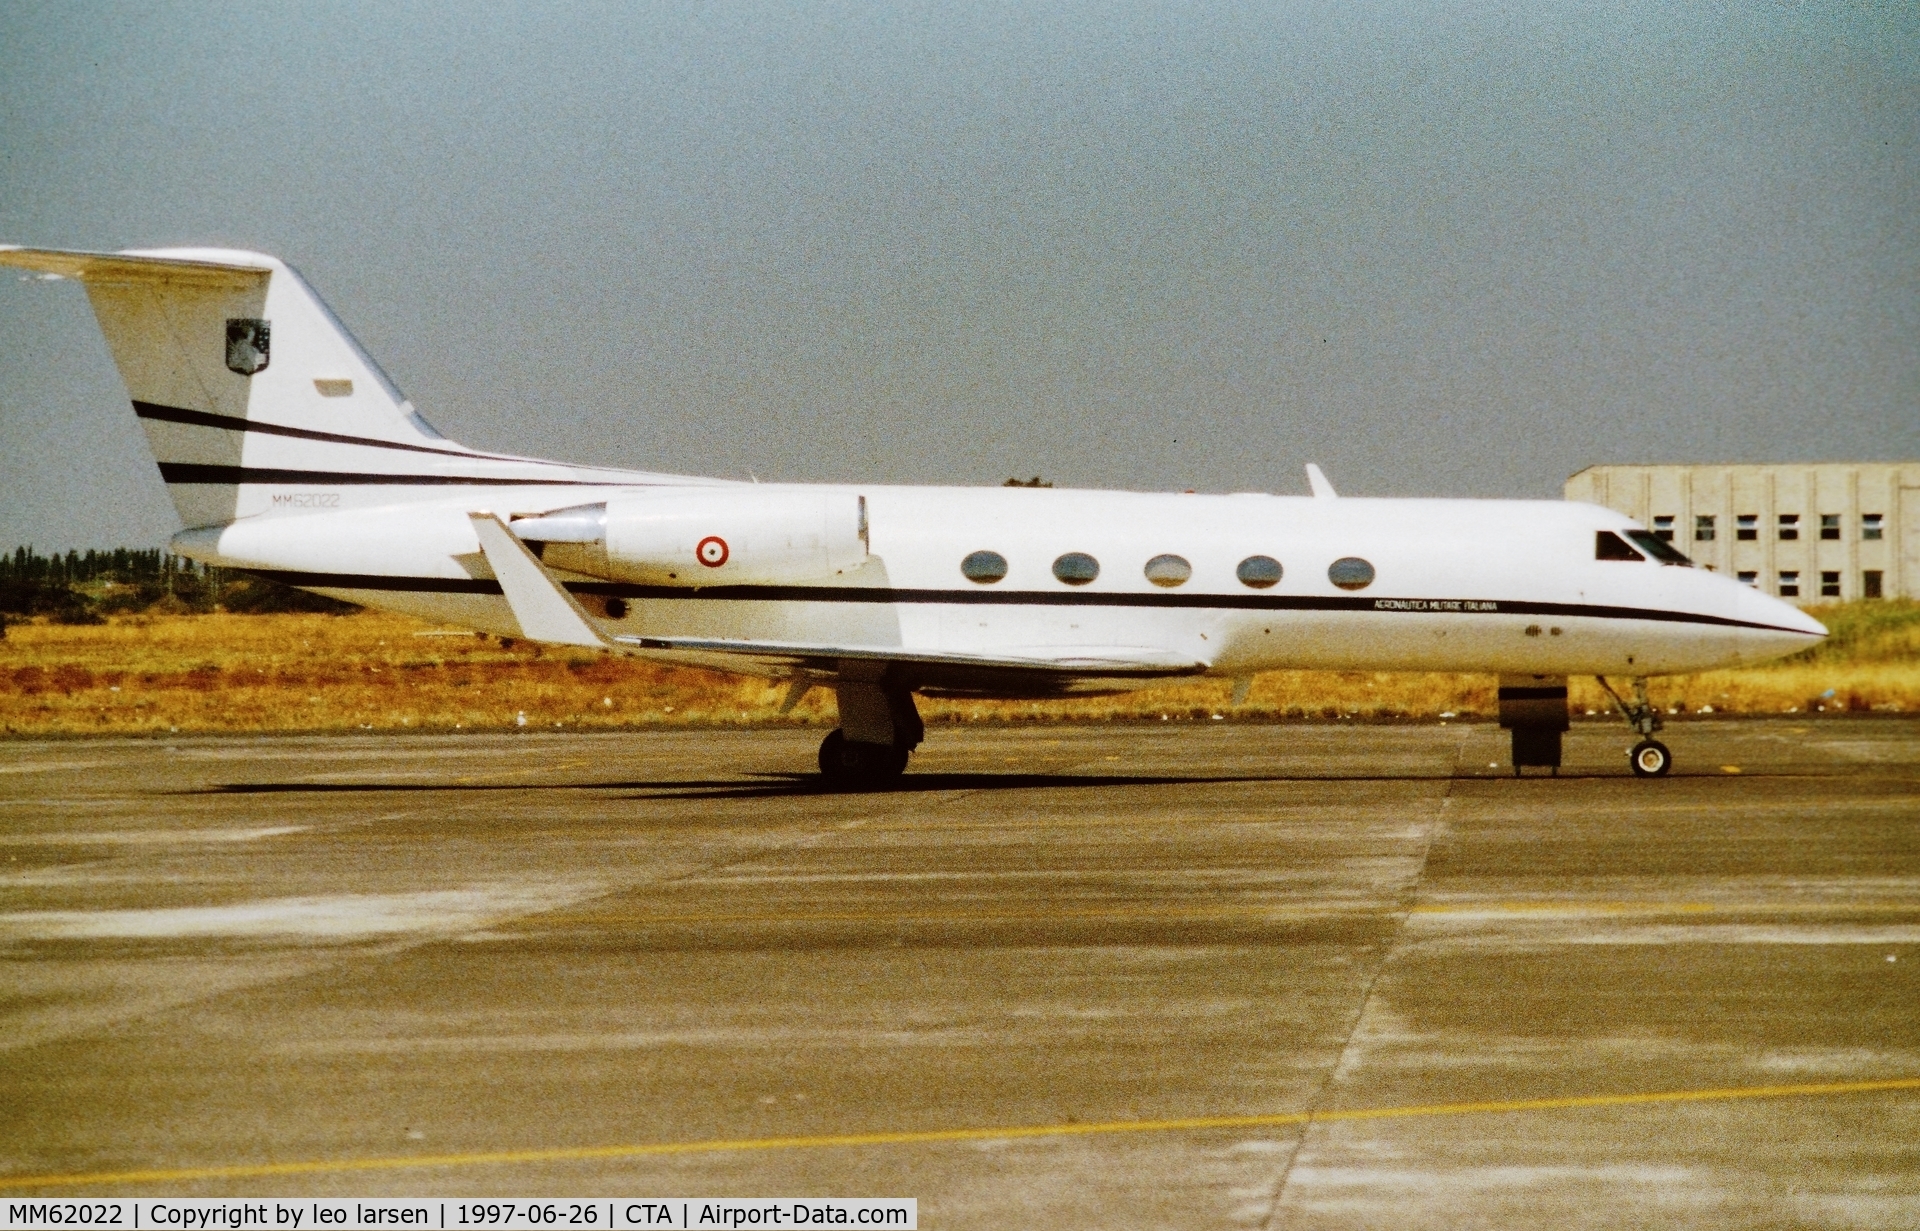 MM62022, 1985 Grumman G-1159A Gulfstream III C/N 451, Catania 26.6.1997